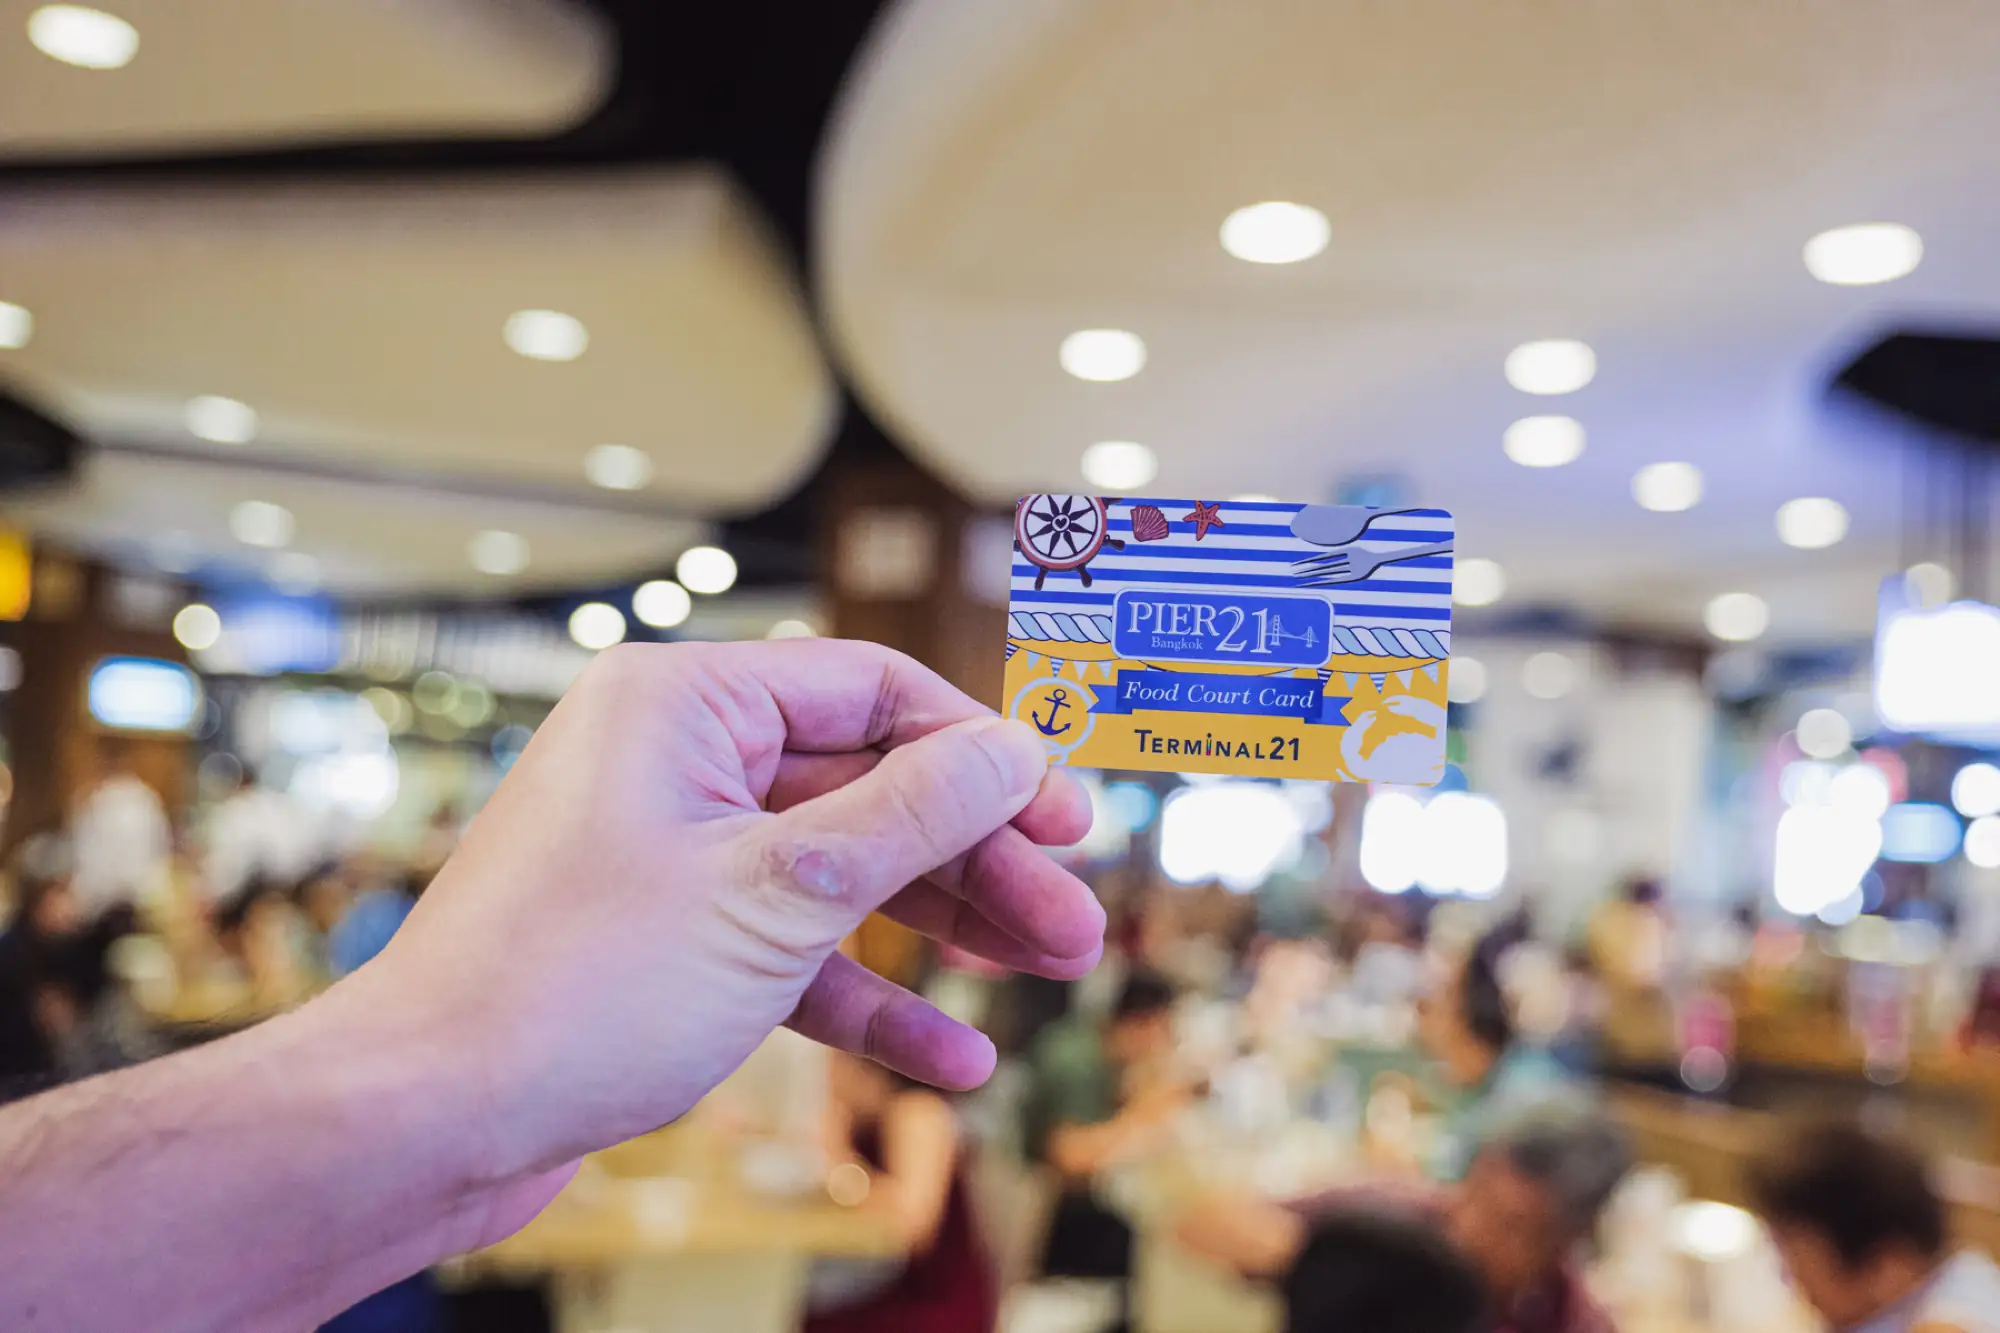 曼谷Terminal 21美食区代金卡1个月内不限次数使用